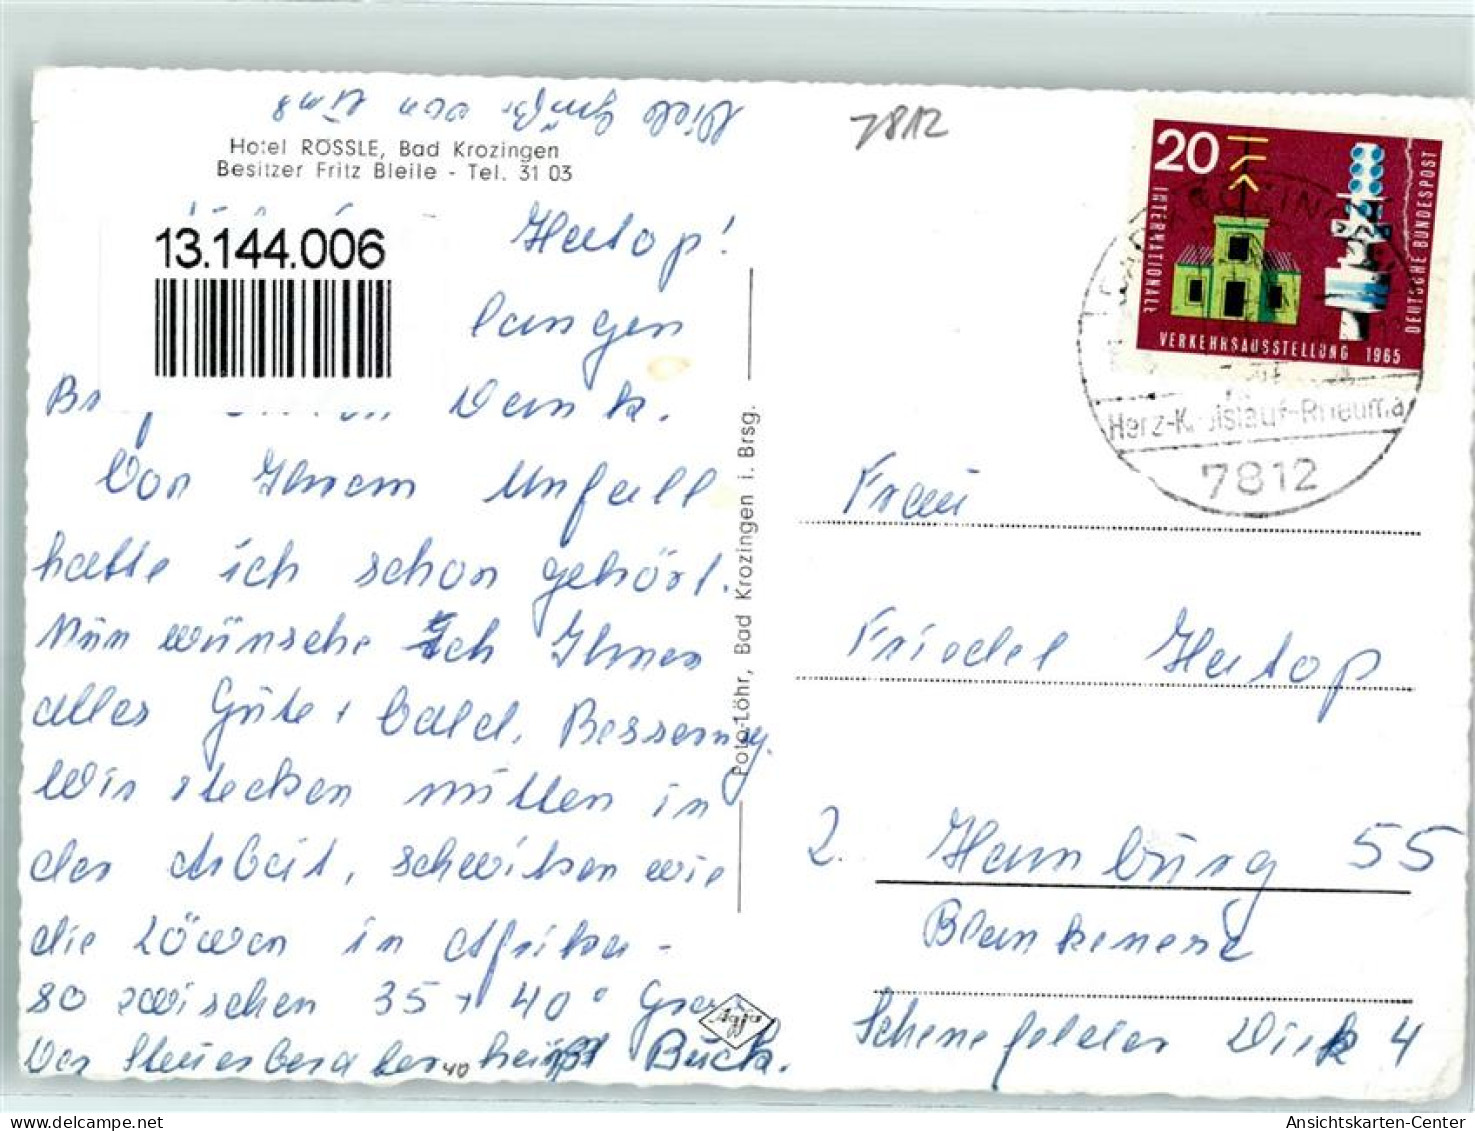 13144006 - Bad Krozingen - Bad Krozingen